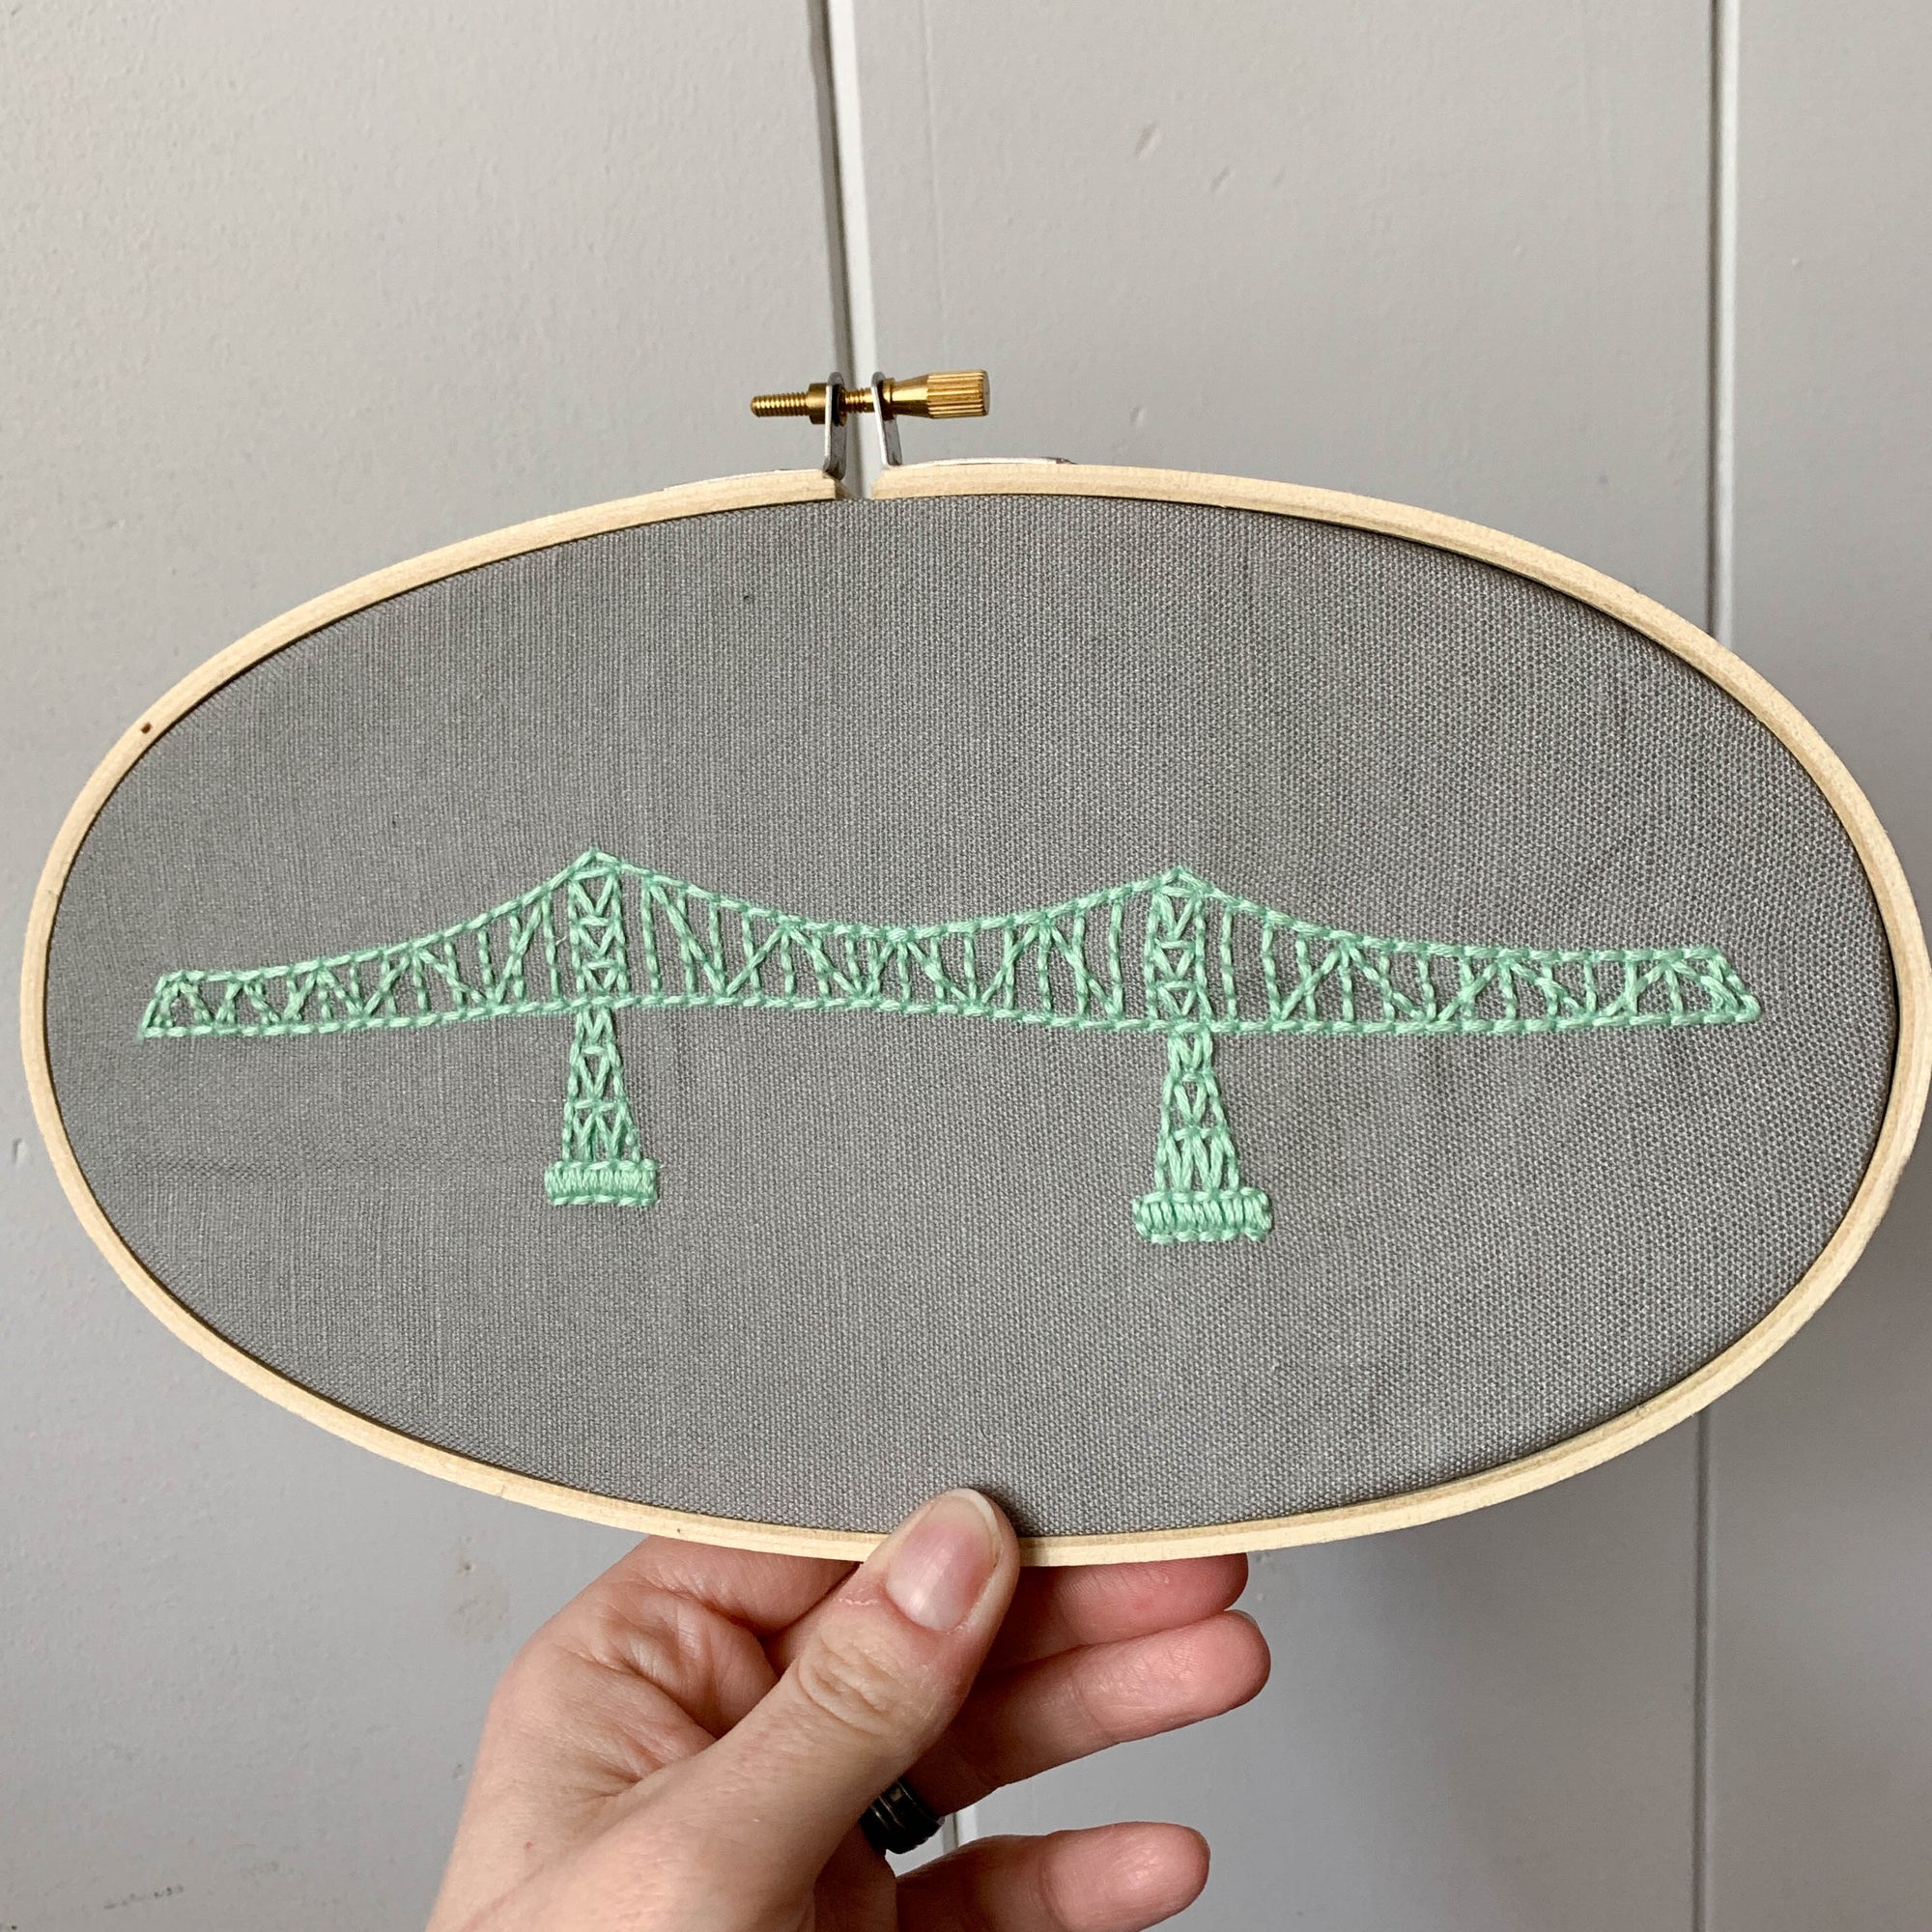 Astoria Megler Bridge Embroidery Kit